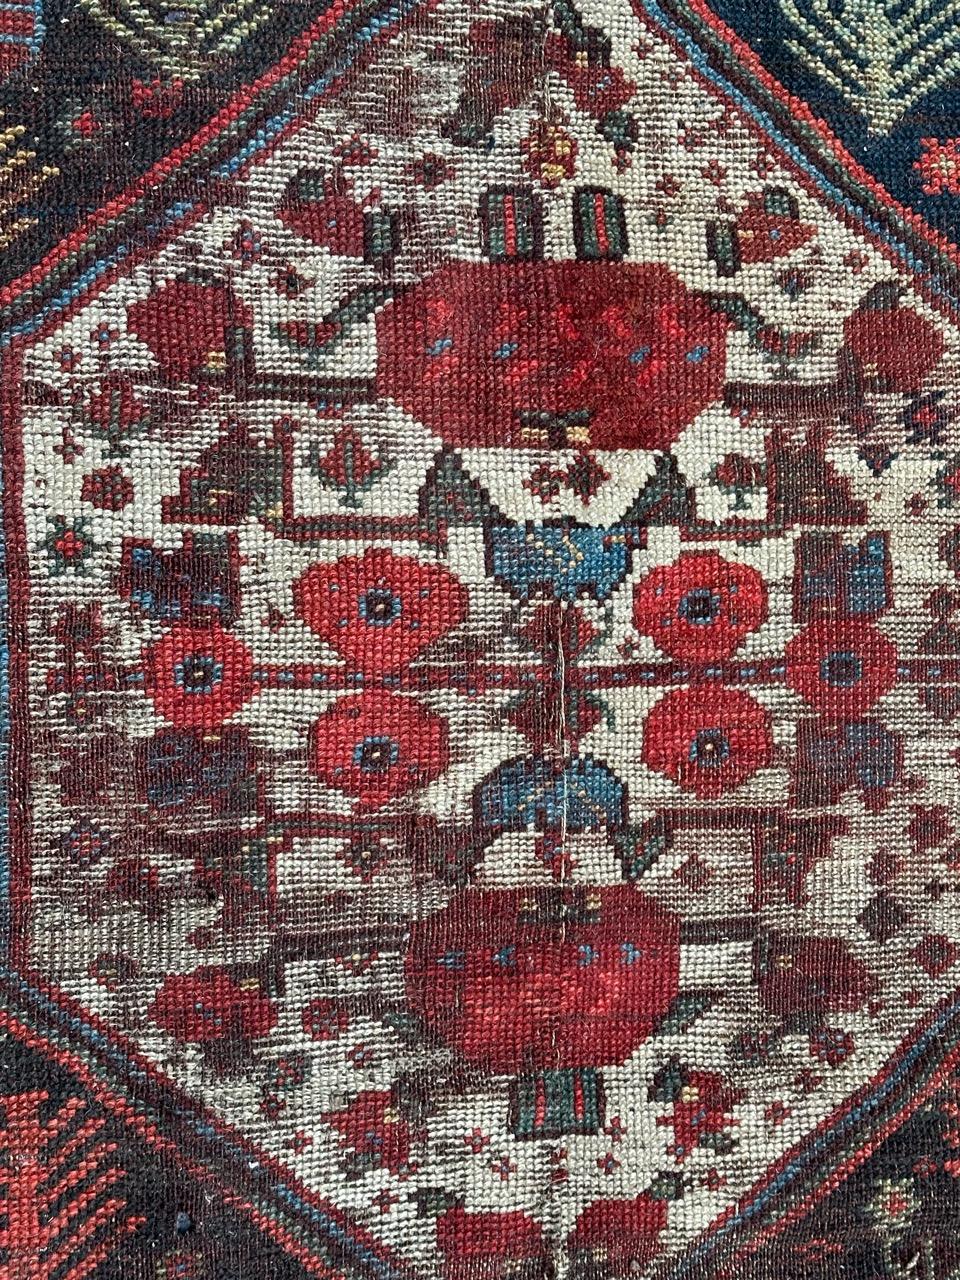 Nature : tapis de la fin du 19e siècle en forme de fragment de qashqai avec de beaux motifs géométriques et tribaux et de belles couleurs naturelles, entièrement noué à la main avec de la laine sur une base de laine. 

✨✨✨
